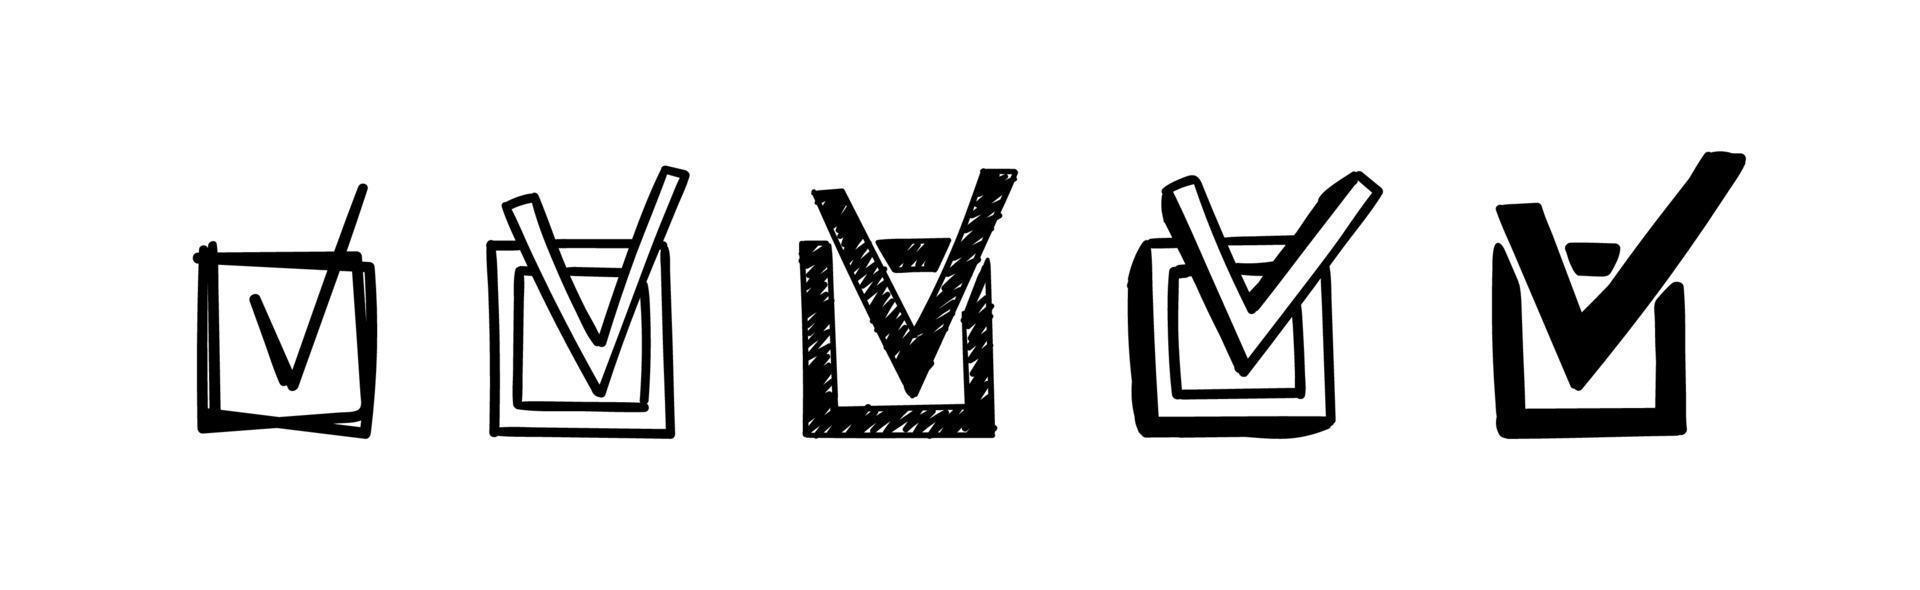 conjunto de caixas de seleção de doodle. marcas de verificação de rabisco desenhados à mão em um quadrado. ilustração vetorial de diferentes sinais da escolha certa, questionário, feito. vetor